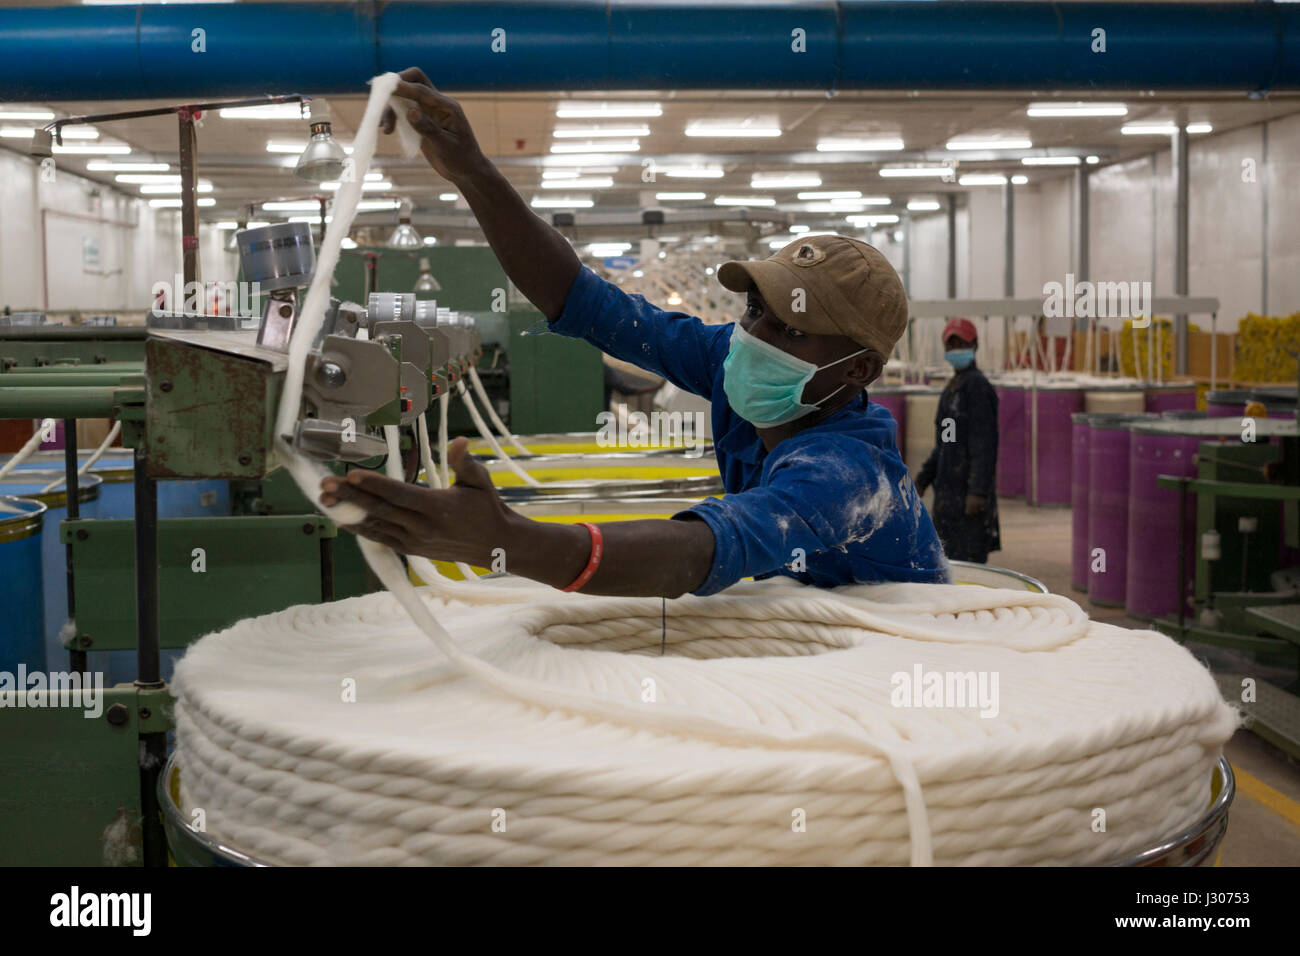 Mitarbeiter sortieren während der Verarbeitung in einem Baumwoll-Ginnery im Besitz von westlichen Uganda Baumwolle Co in Kasese Rohbaumwolle. Baumwolle ist eines der wichtigsten Exportprodukte Ugandas Stockfoto